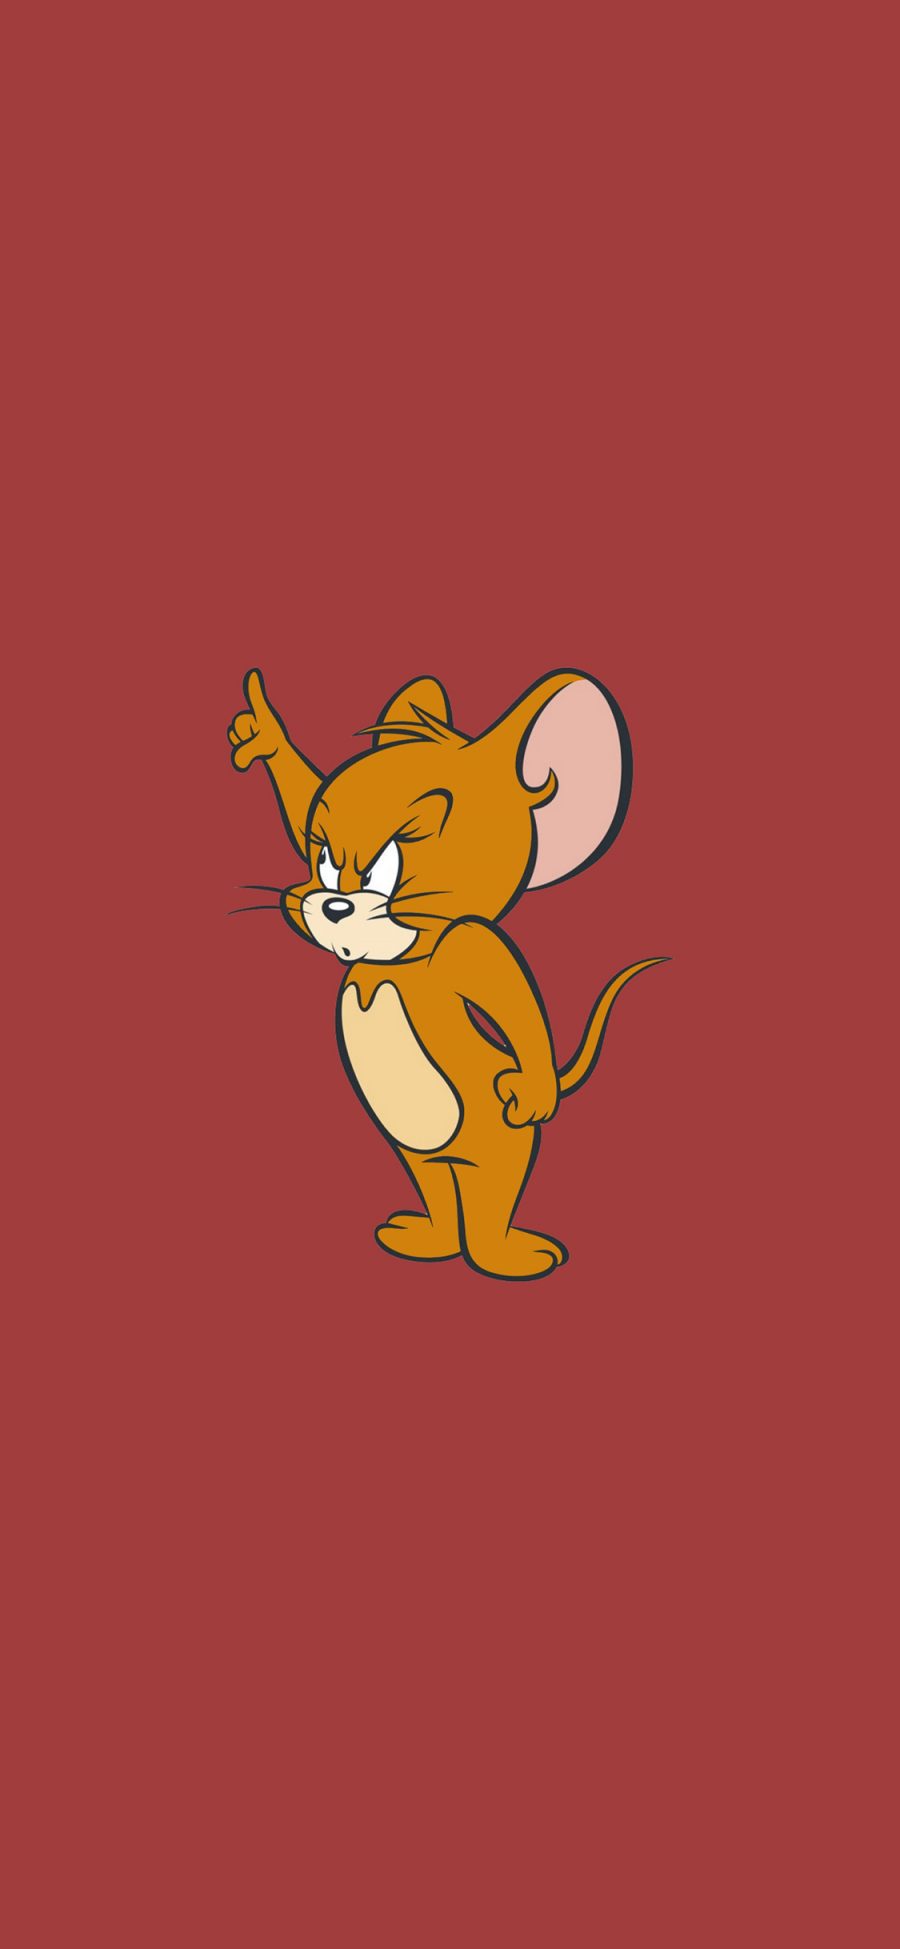 [2436×1125]猫和老鼠 红色 杰瑞鼠 动画 可爱 苹果手机动漫壁纸图片